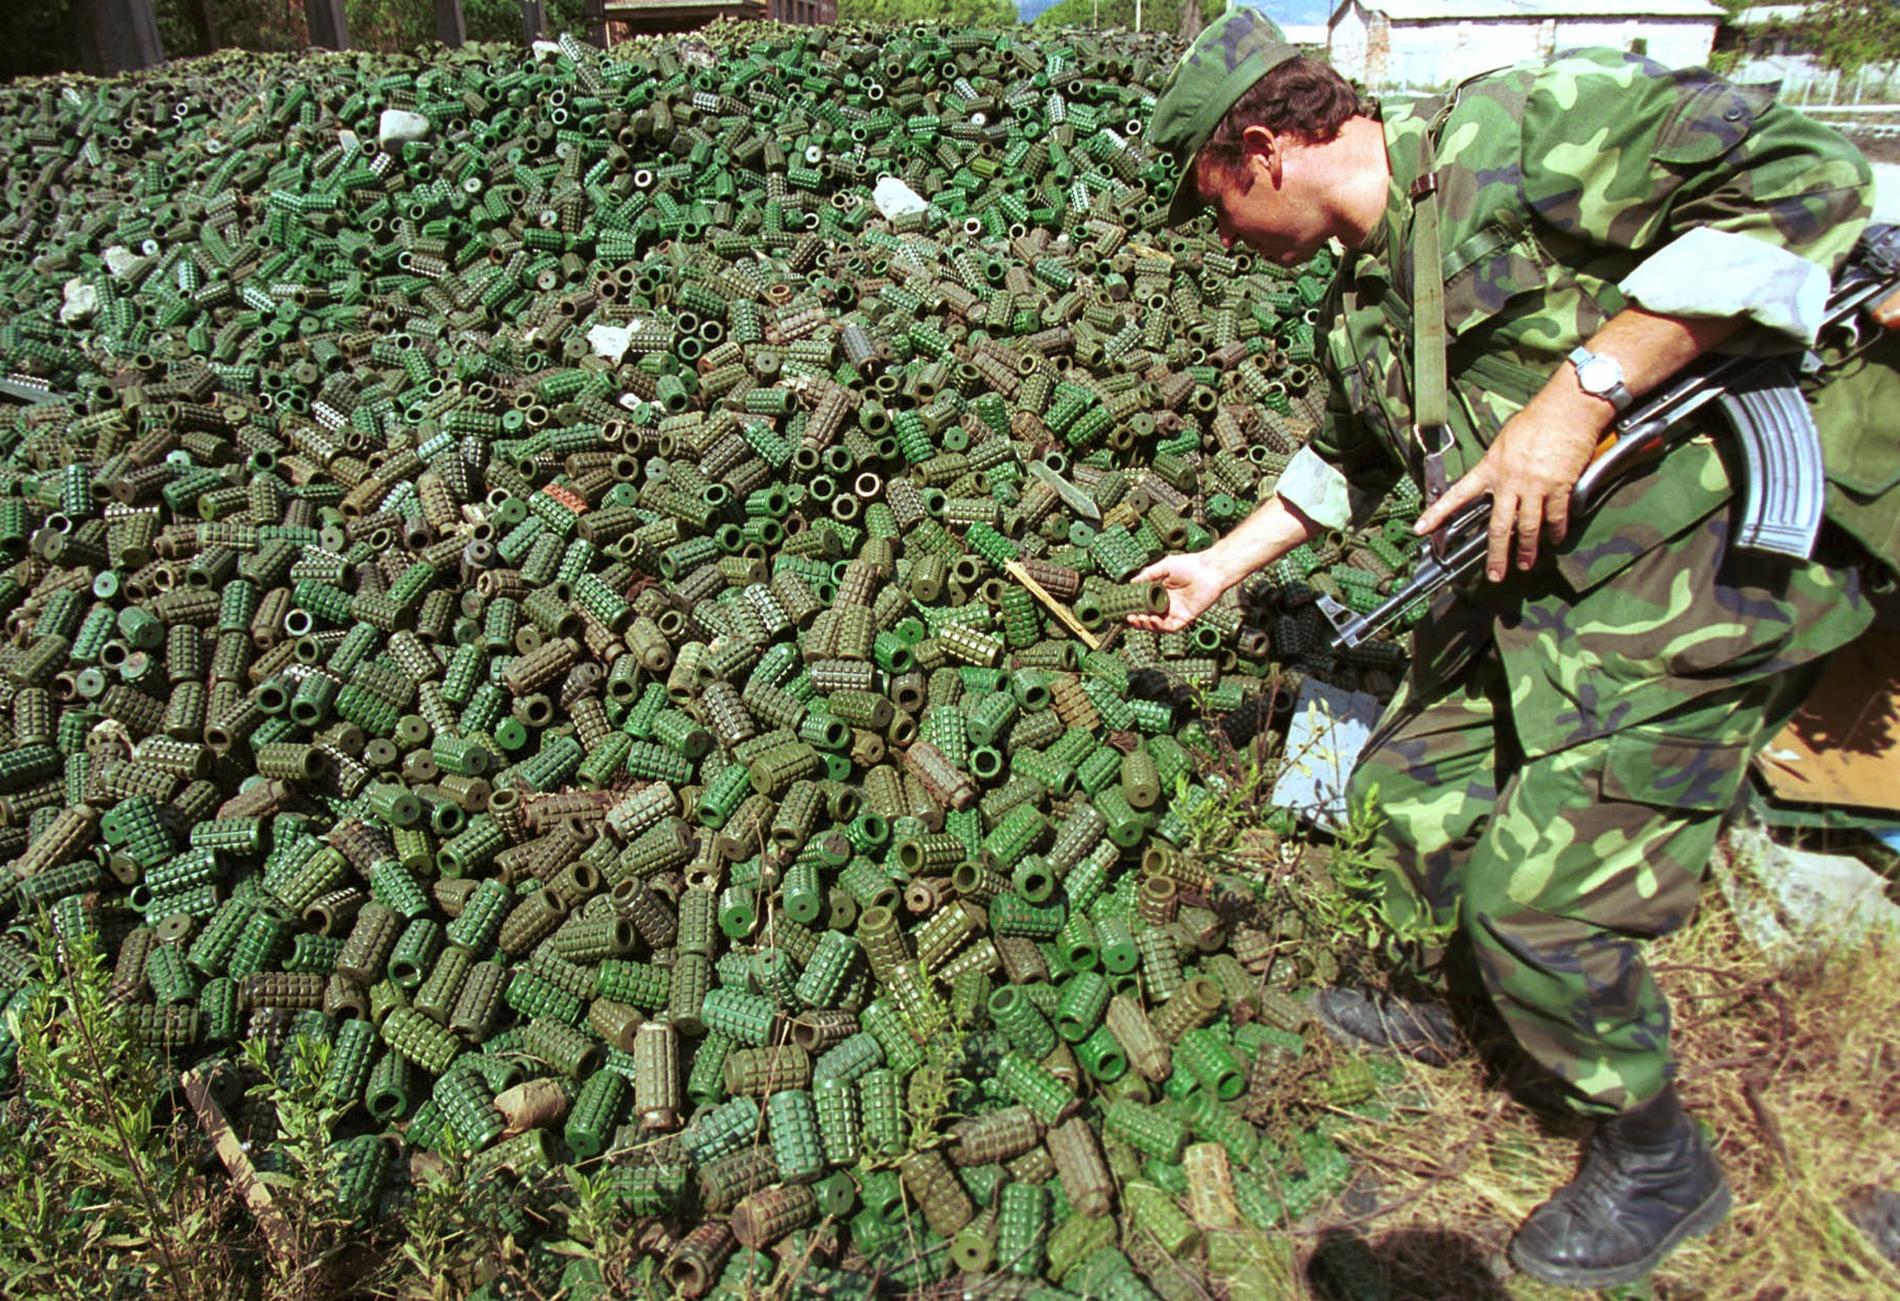 160 länder är del av den konvention som vill eliminera personminor. Här en bild på personminor i Albanien som ska förstöras. USA:s förre president Barack Obama har tidigare förbjudit amerikanskt användande av personminor, ett beslut som nuvarande president Donald Trump häver. Arkivbild.